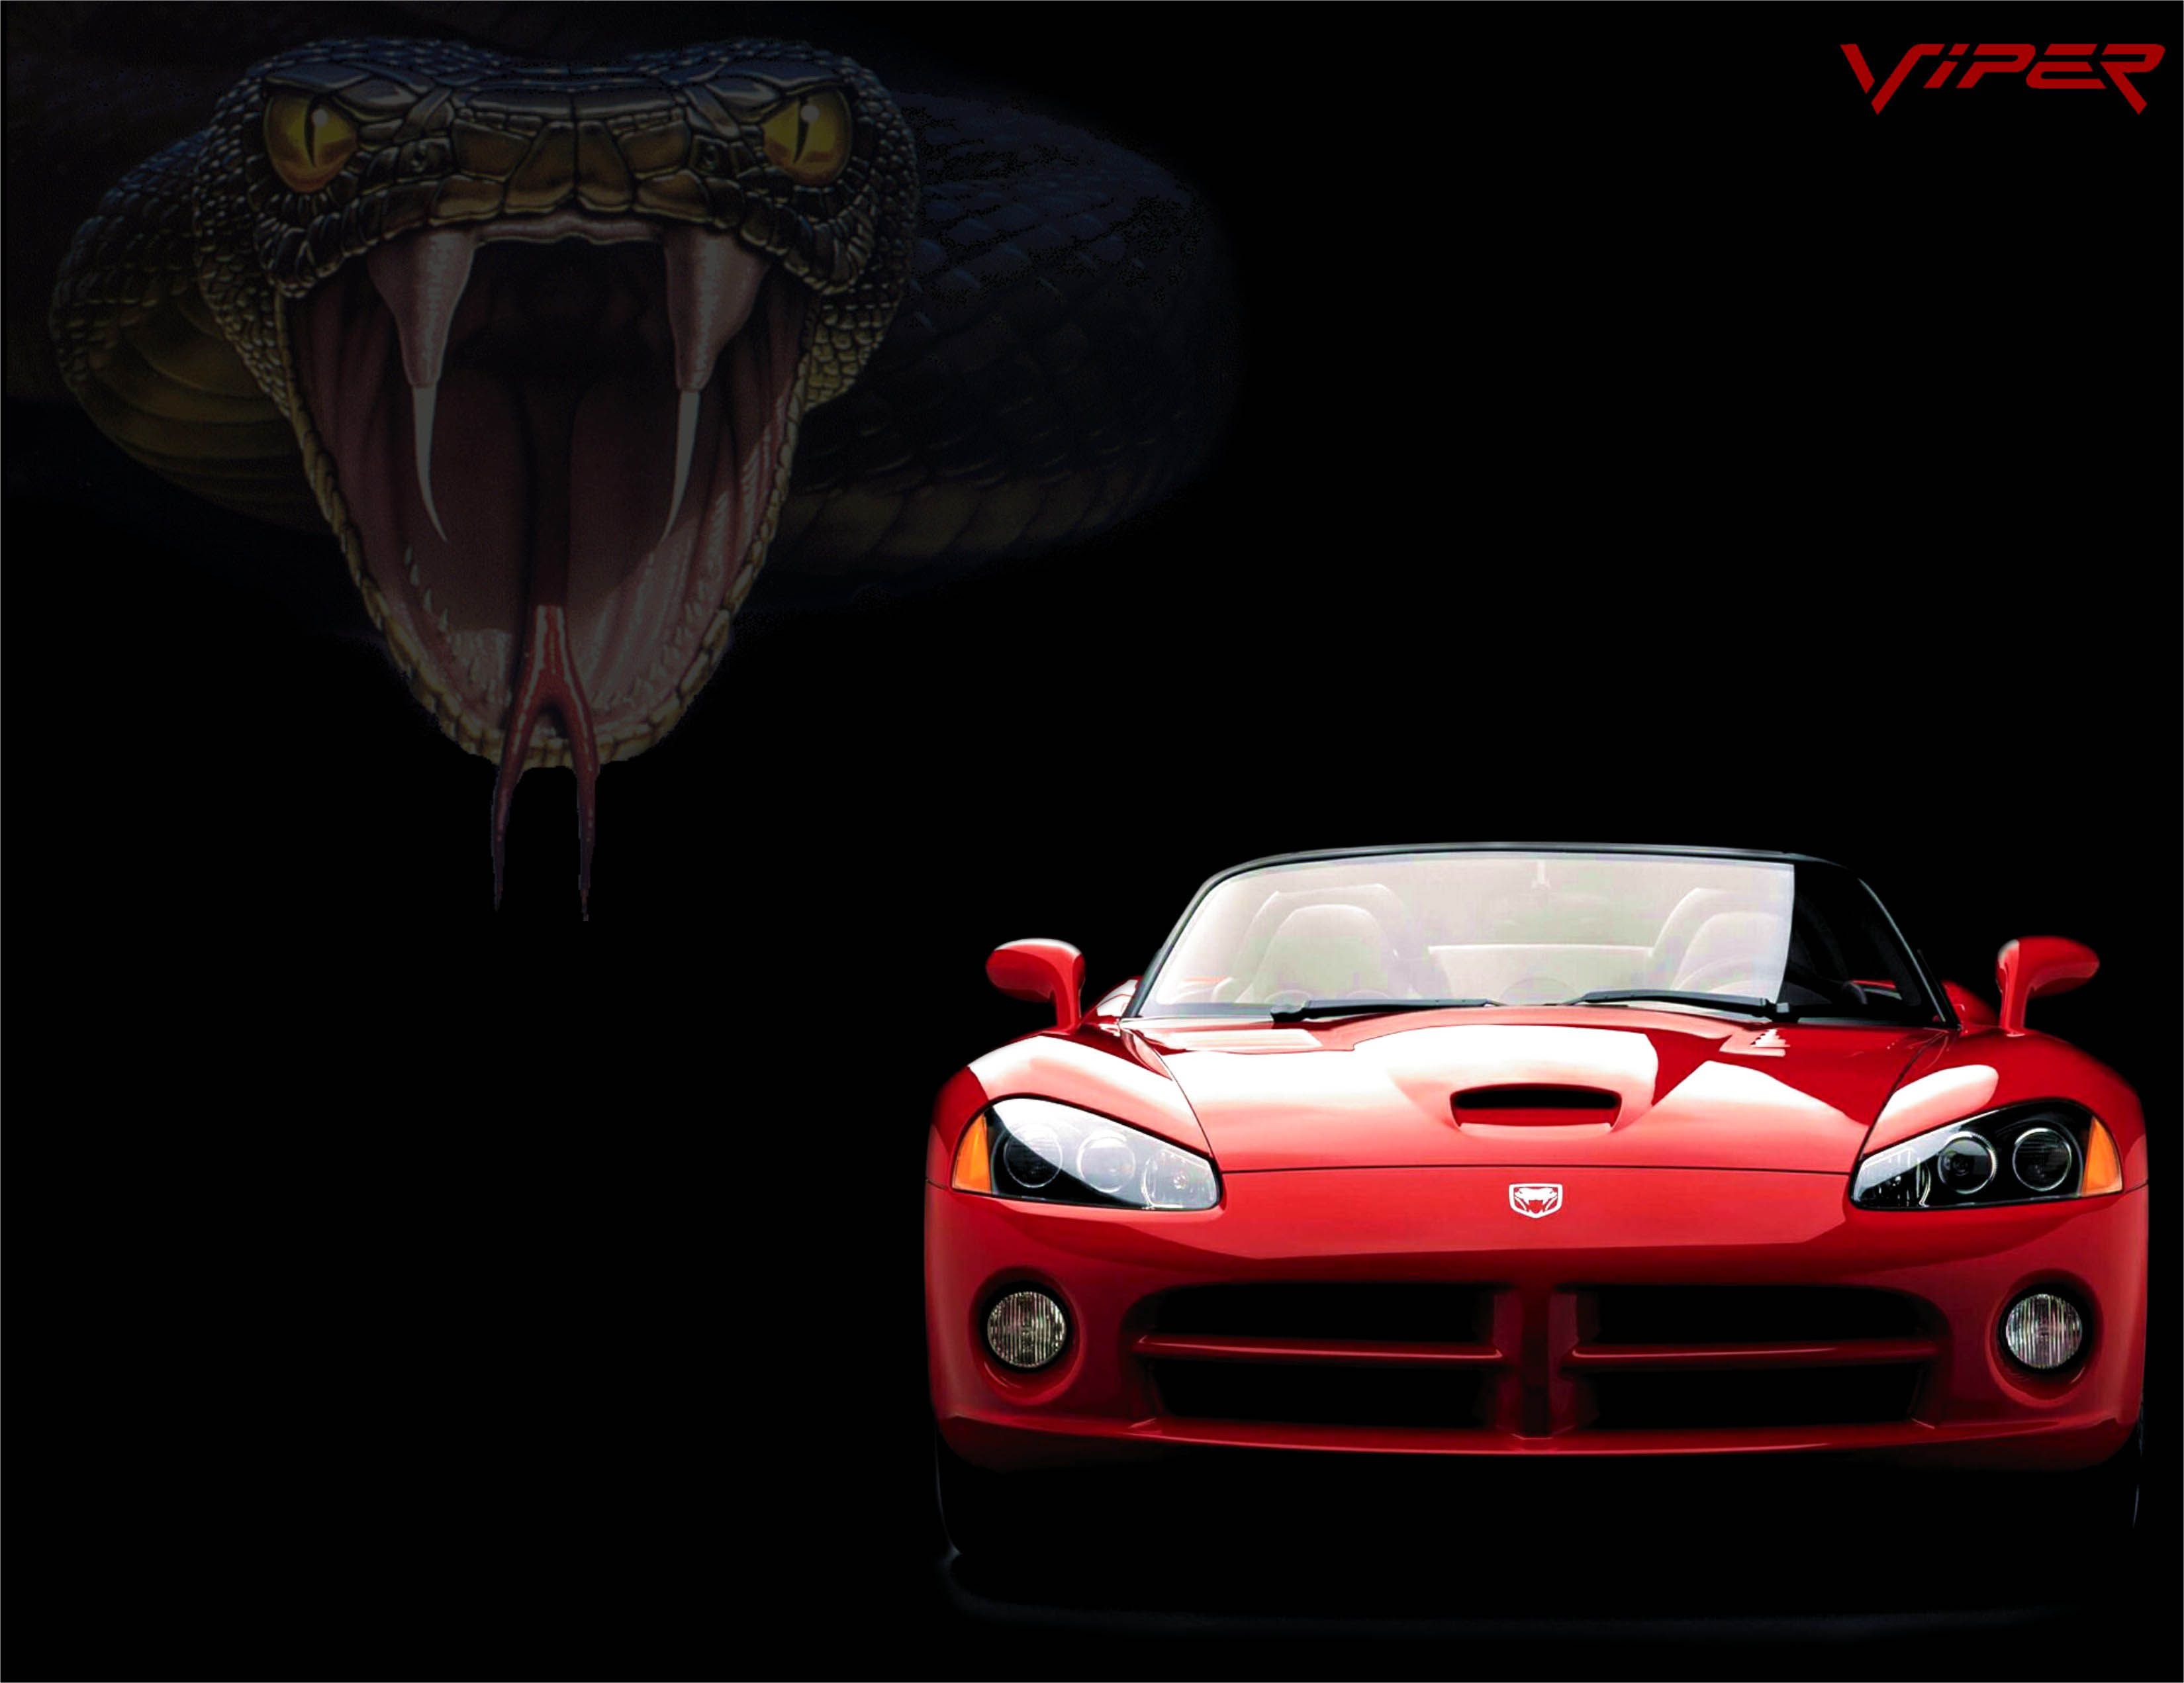 2014 Dodge Viper ACR - image #335